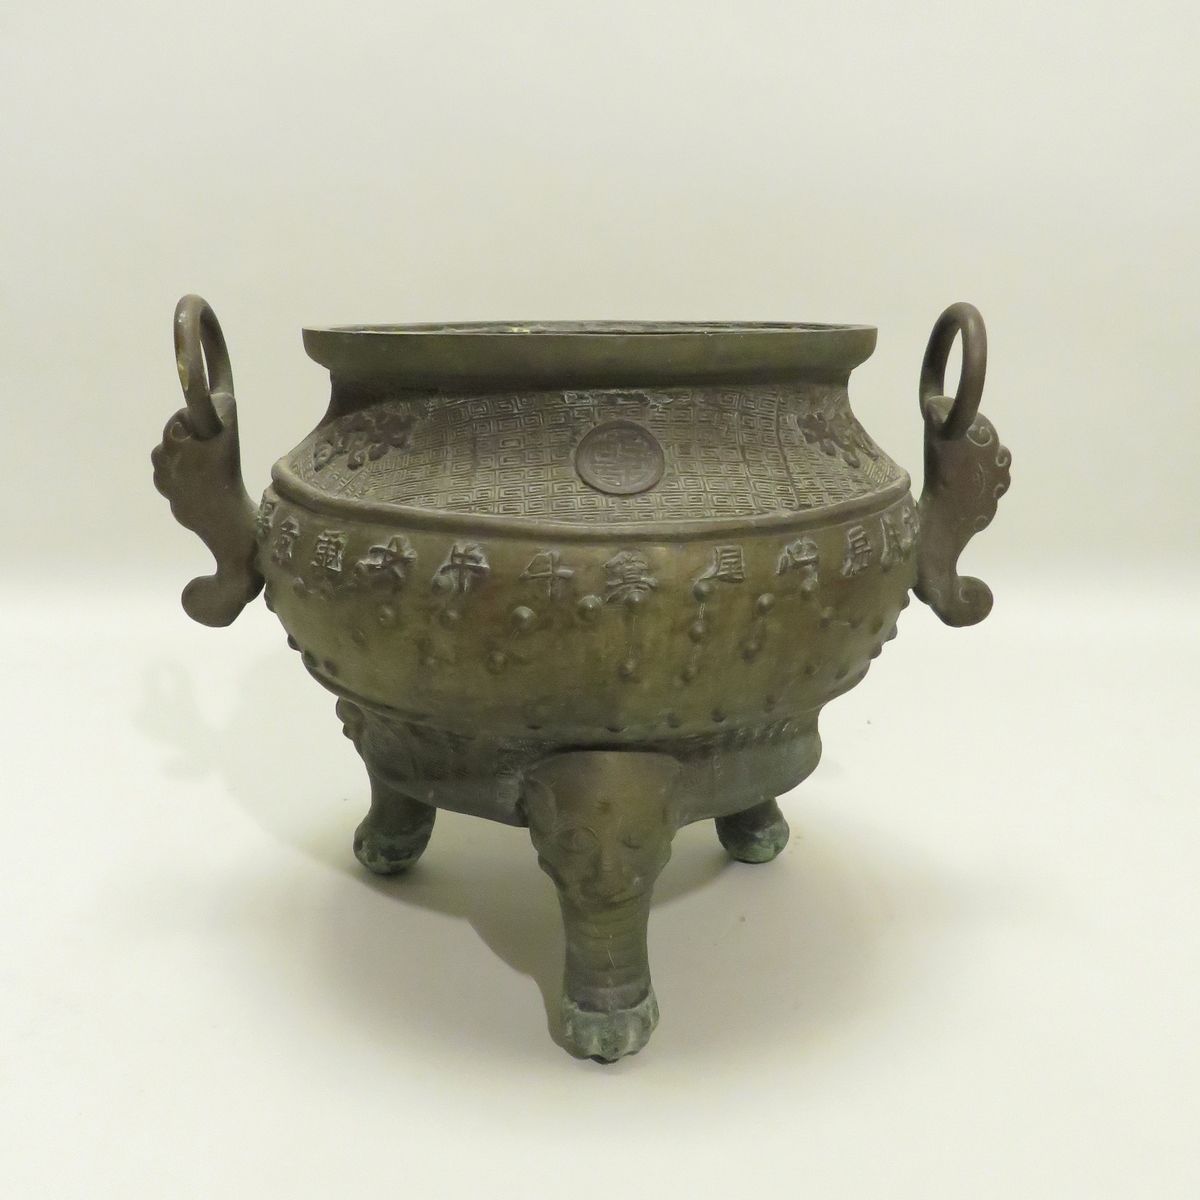 一件中国古代丁字形的青铜鼎香炉，炉身以浮雕的方式装饰着以名字标识的